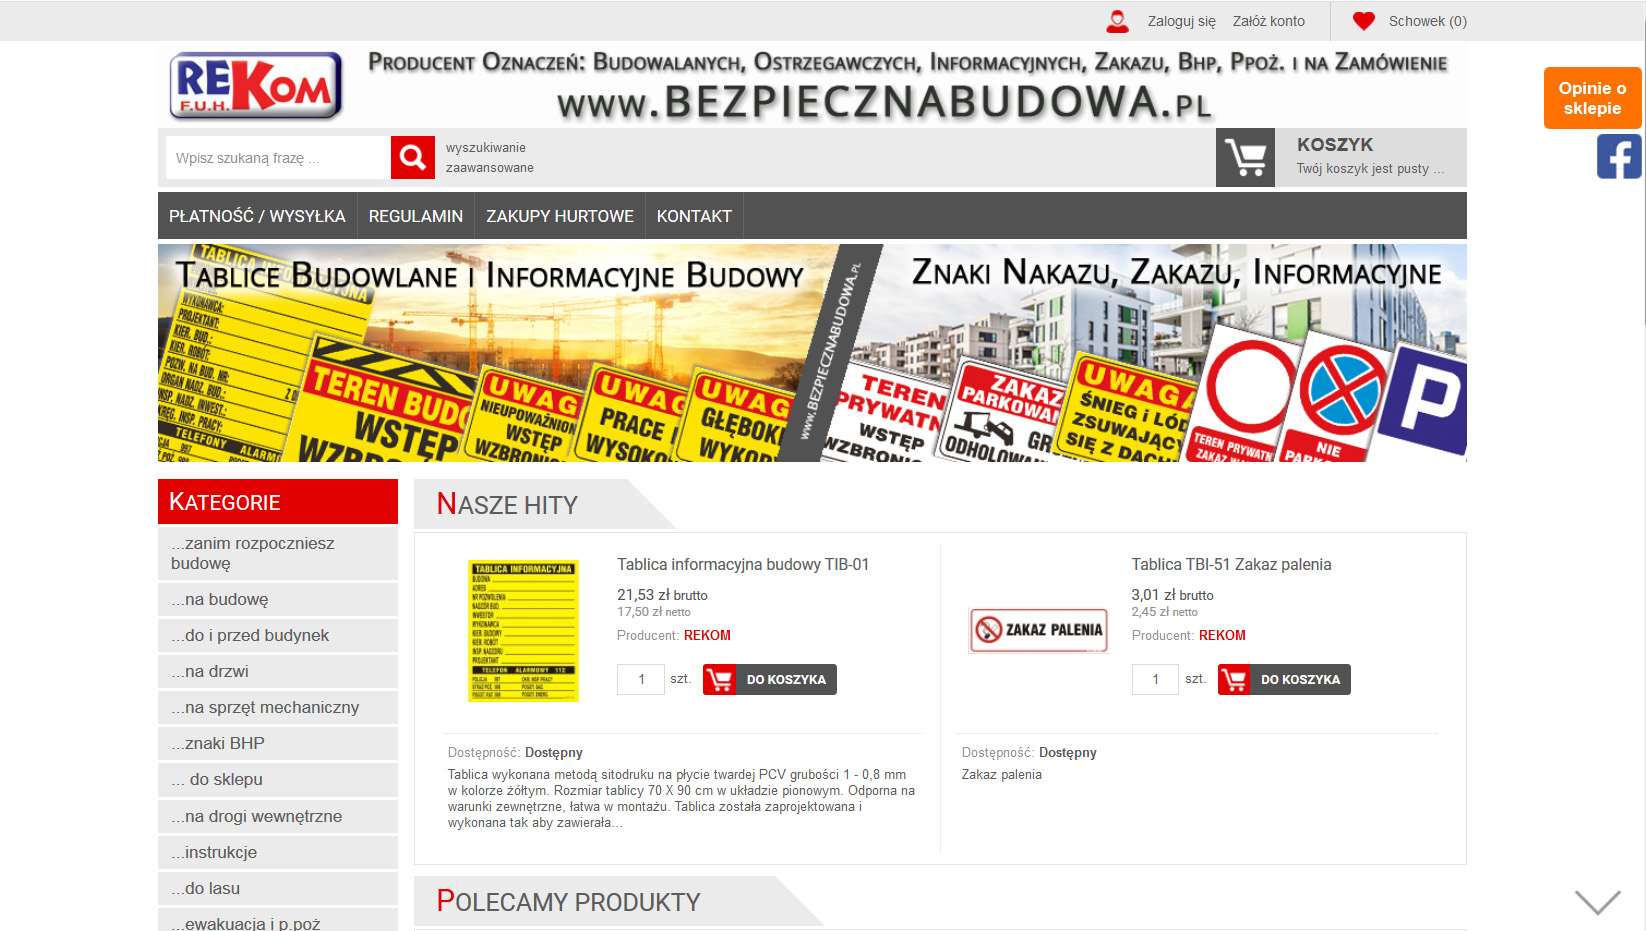 www.bezpiecznabudowa.pl